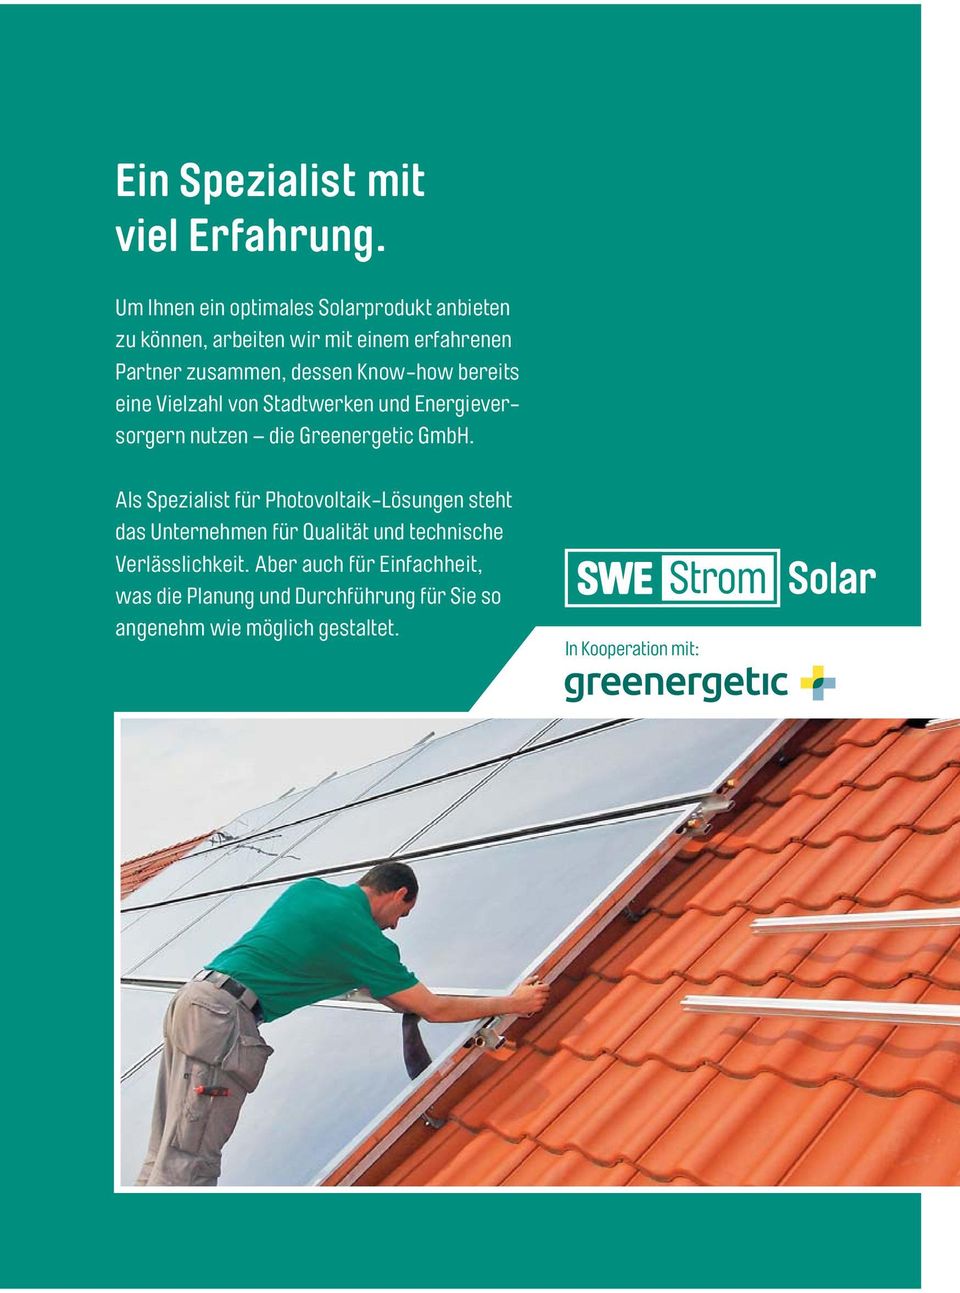 Know-how bereits eine Vielzahl von Stadtwerken und Energieversorgern nutzen die Greenergetic GmbH.